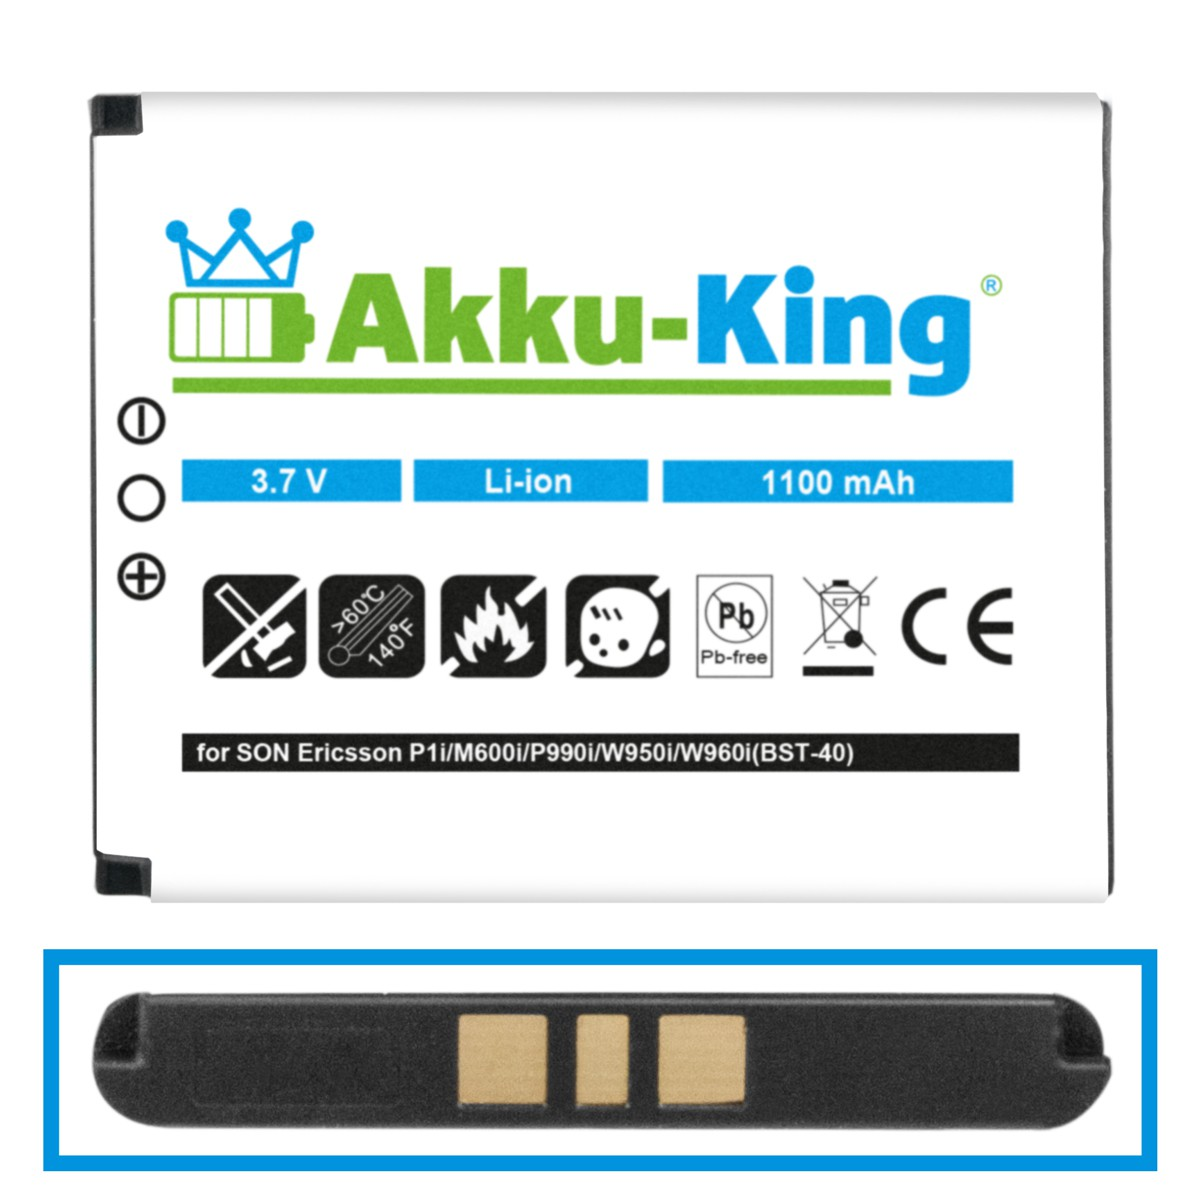 Volt, 3.7 AKKU-KING 1100mAh kompatibel Akku mit BST-40 Handy-Akku, Sony-Ericsson Li-Ion